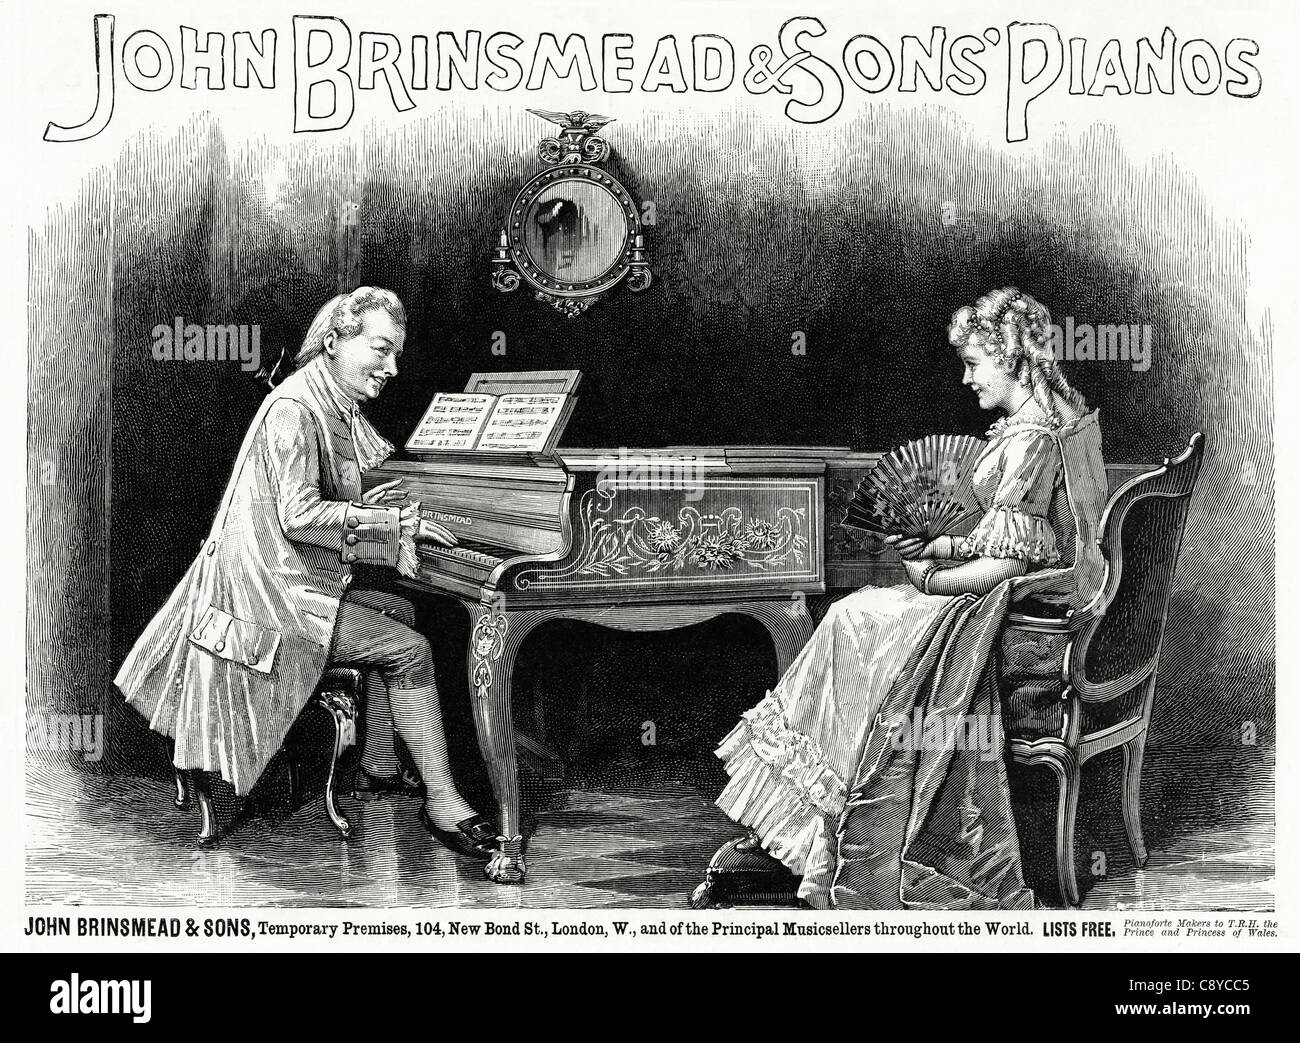 JOHN BRINSMEAD & SONS PIANOS annonce. Circa 1892 origine victorienne publicité Publicité Banque D'Images